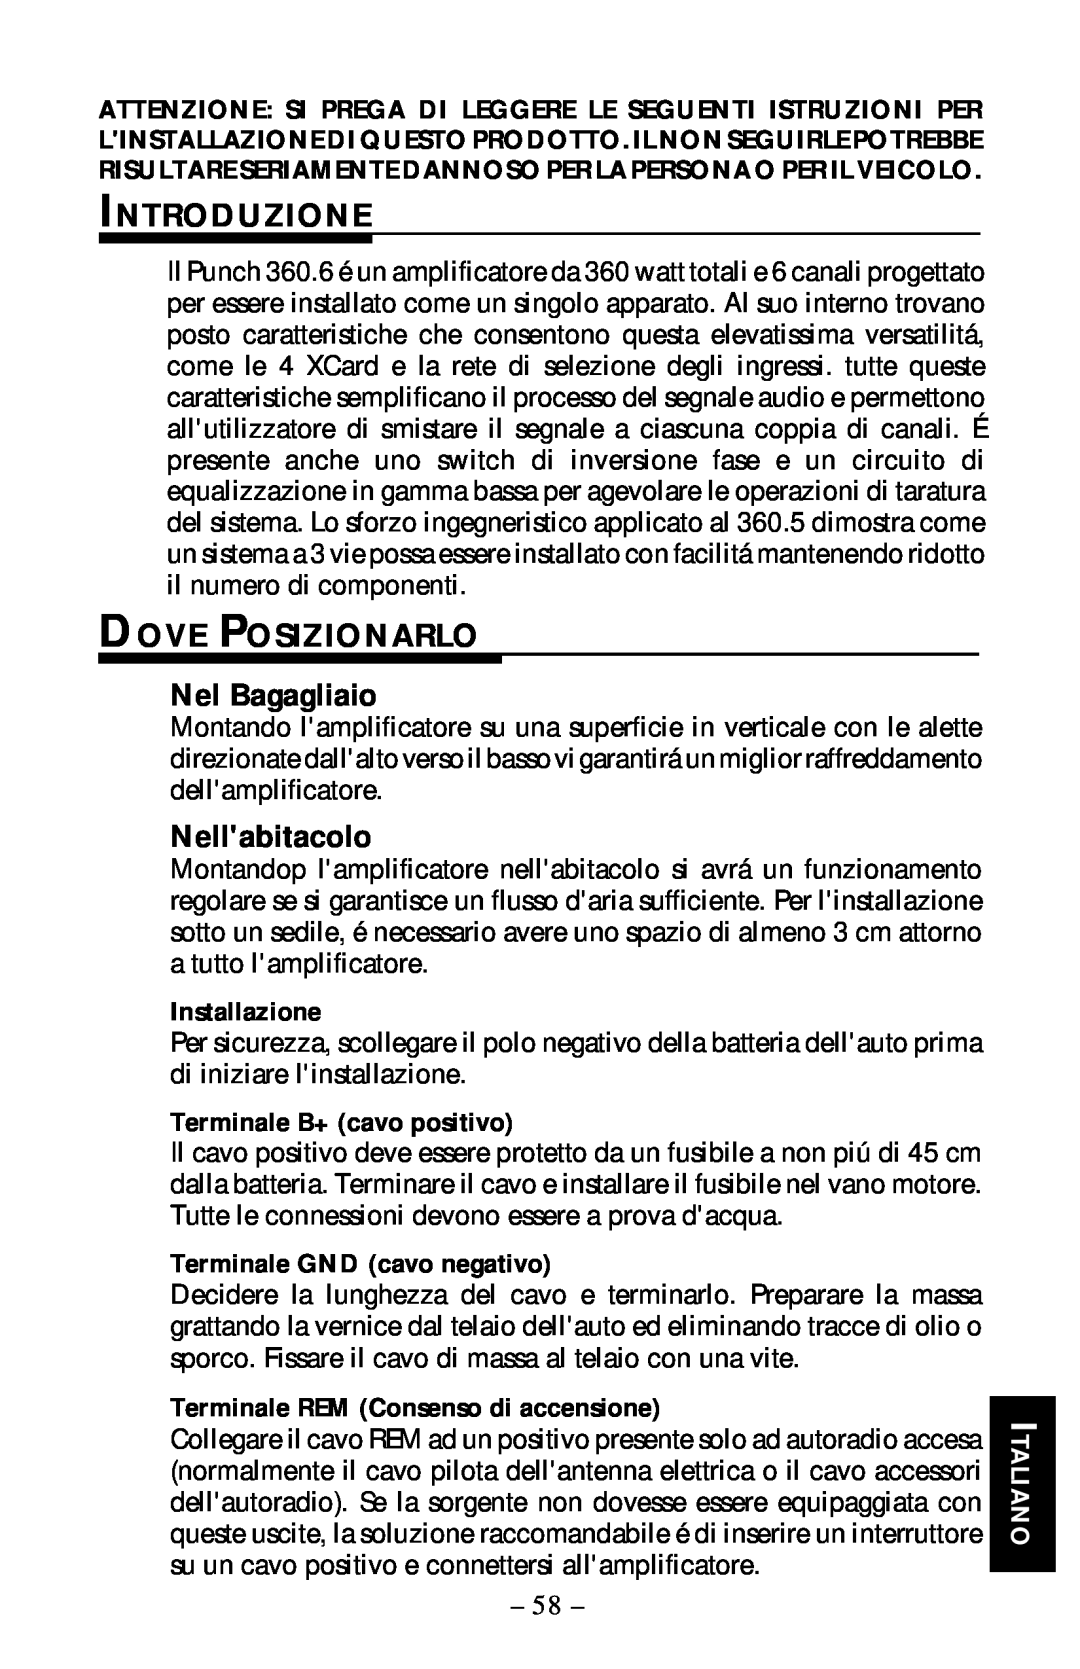 Rockford Fosgate 360.6 manual Introduzione, Dove Posizionarlo, Nel Bagagliaio, Nellabitacolo, Installazione, Italiano 